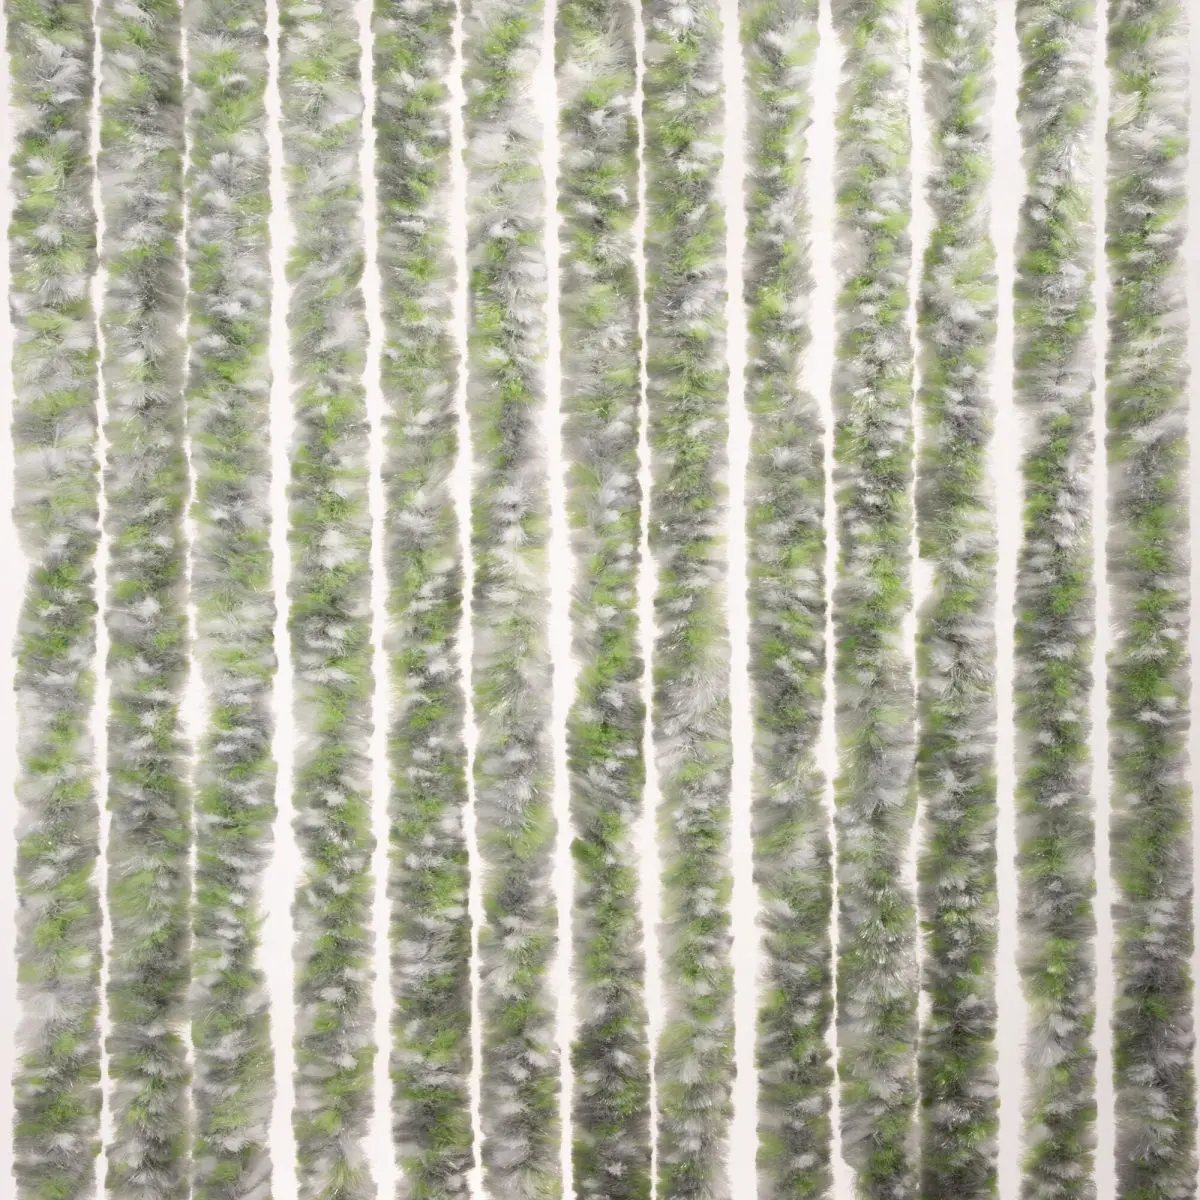 Šenilový flísový stan/balkón - 100 x 205 cm, sivý/biely/zelený